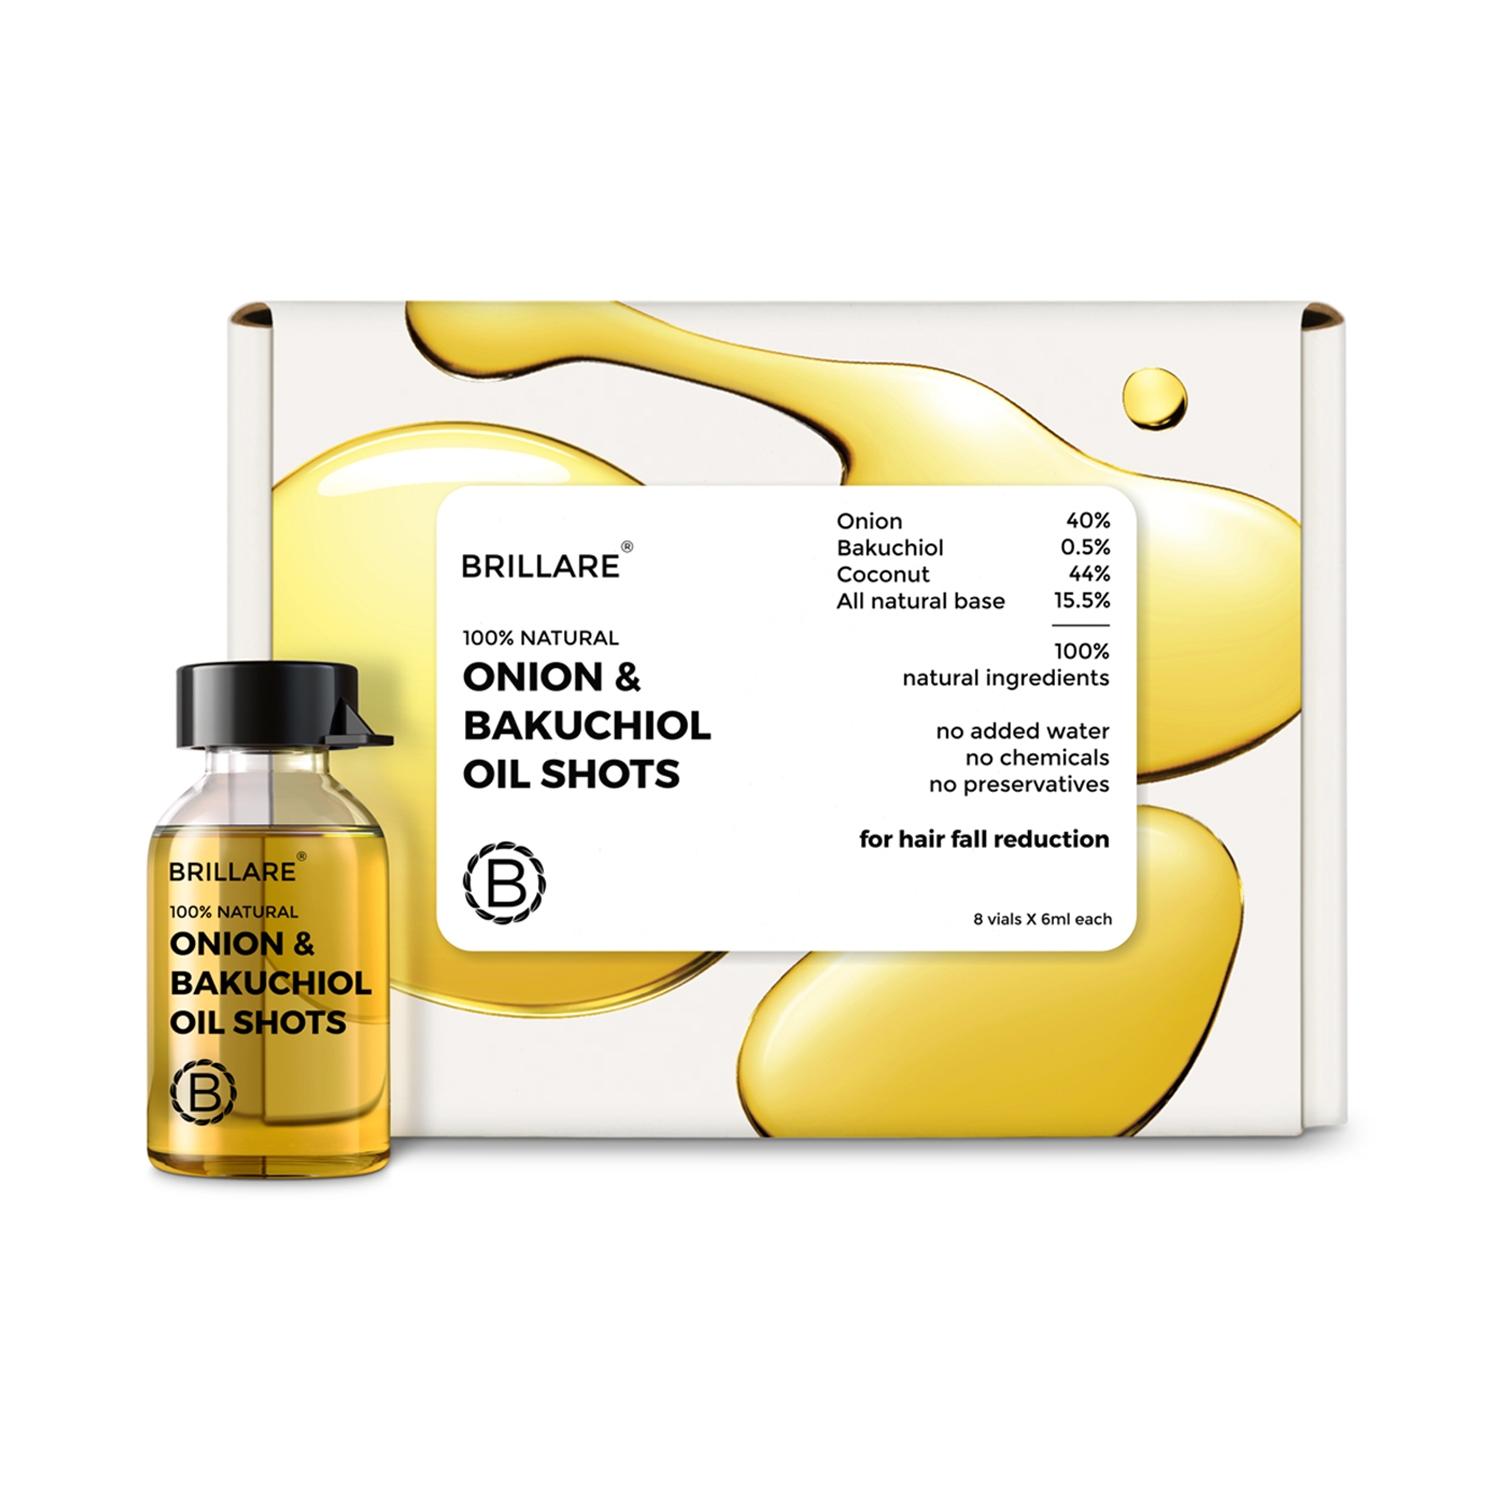 brillare onion & bakuchiol oil shots for hair fall reduction (48ml)